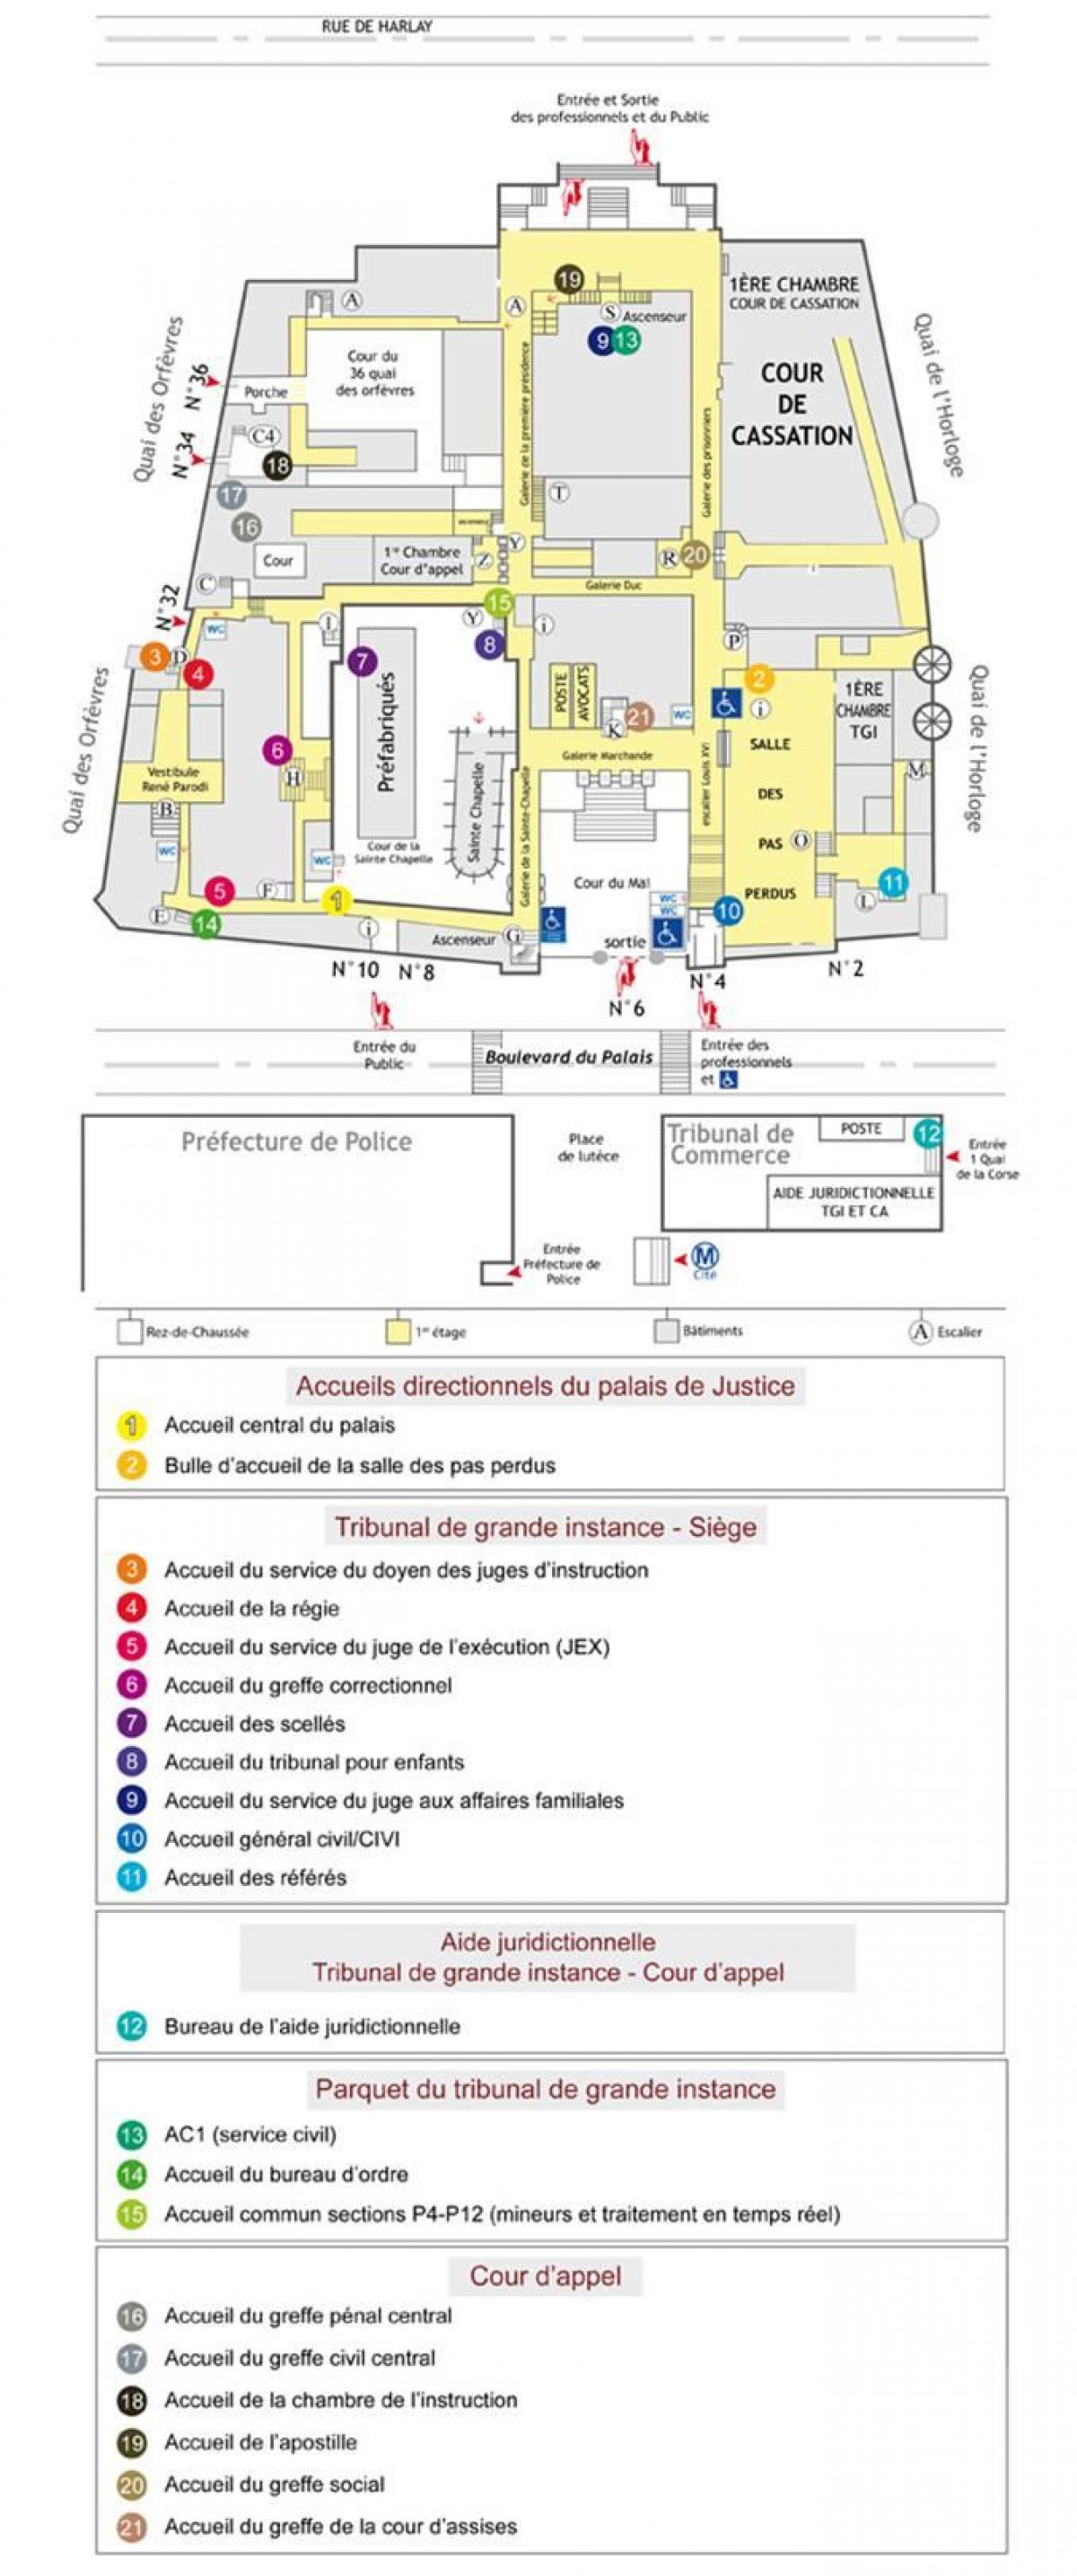 Mapa ng Palais de Justice Paris